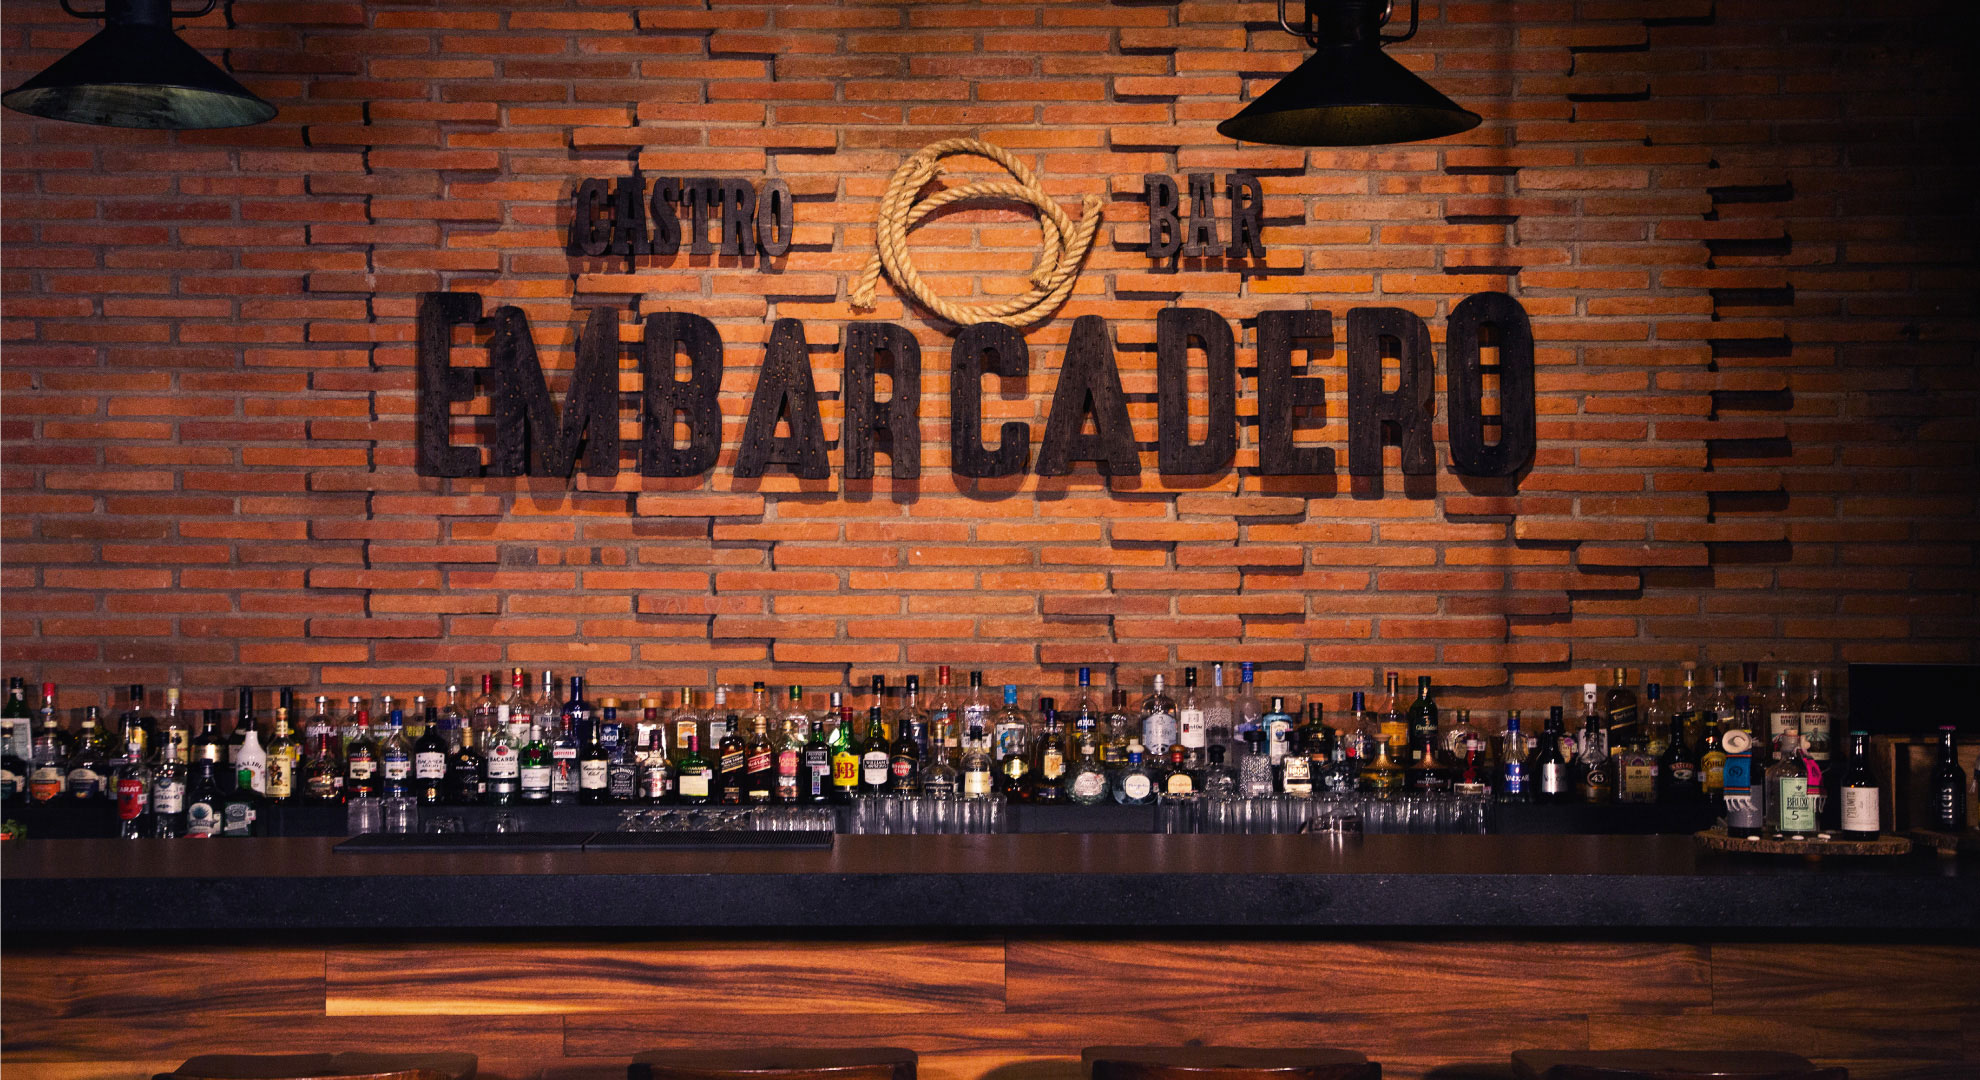 Bar<br/><strong>Embarcadero</strong>